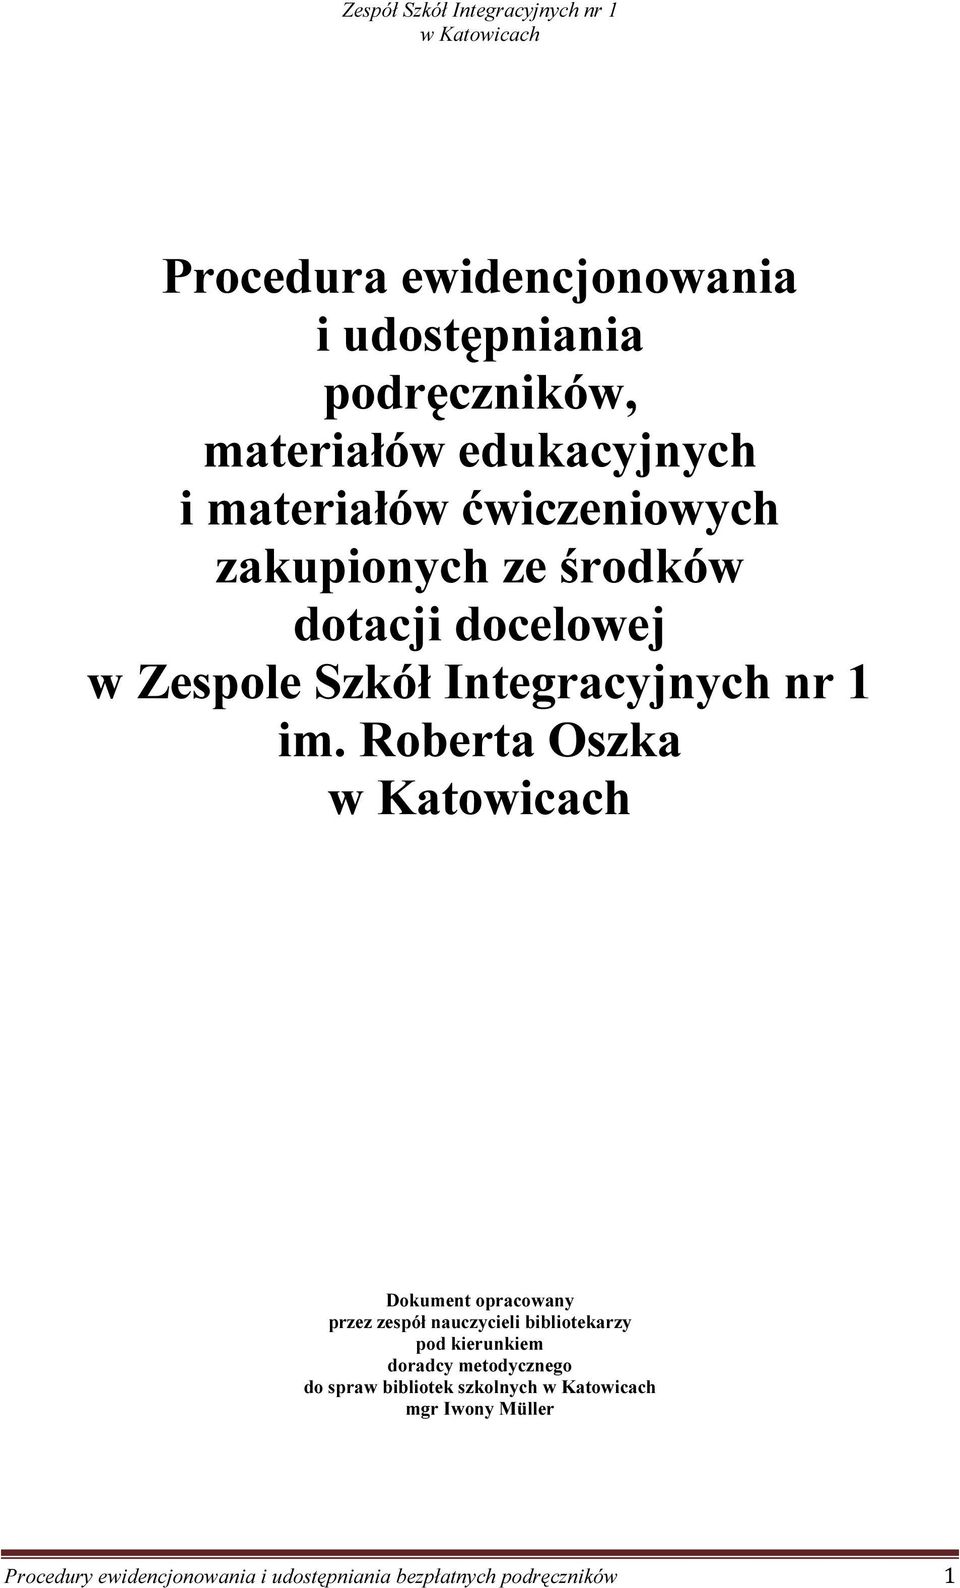 Roberta Oszka Dokument opracowany przez zespół nauczycieli bibliotekarzy pod kierunkiem doradcy